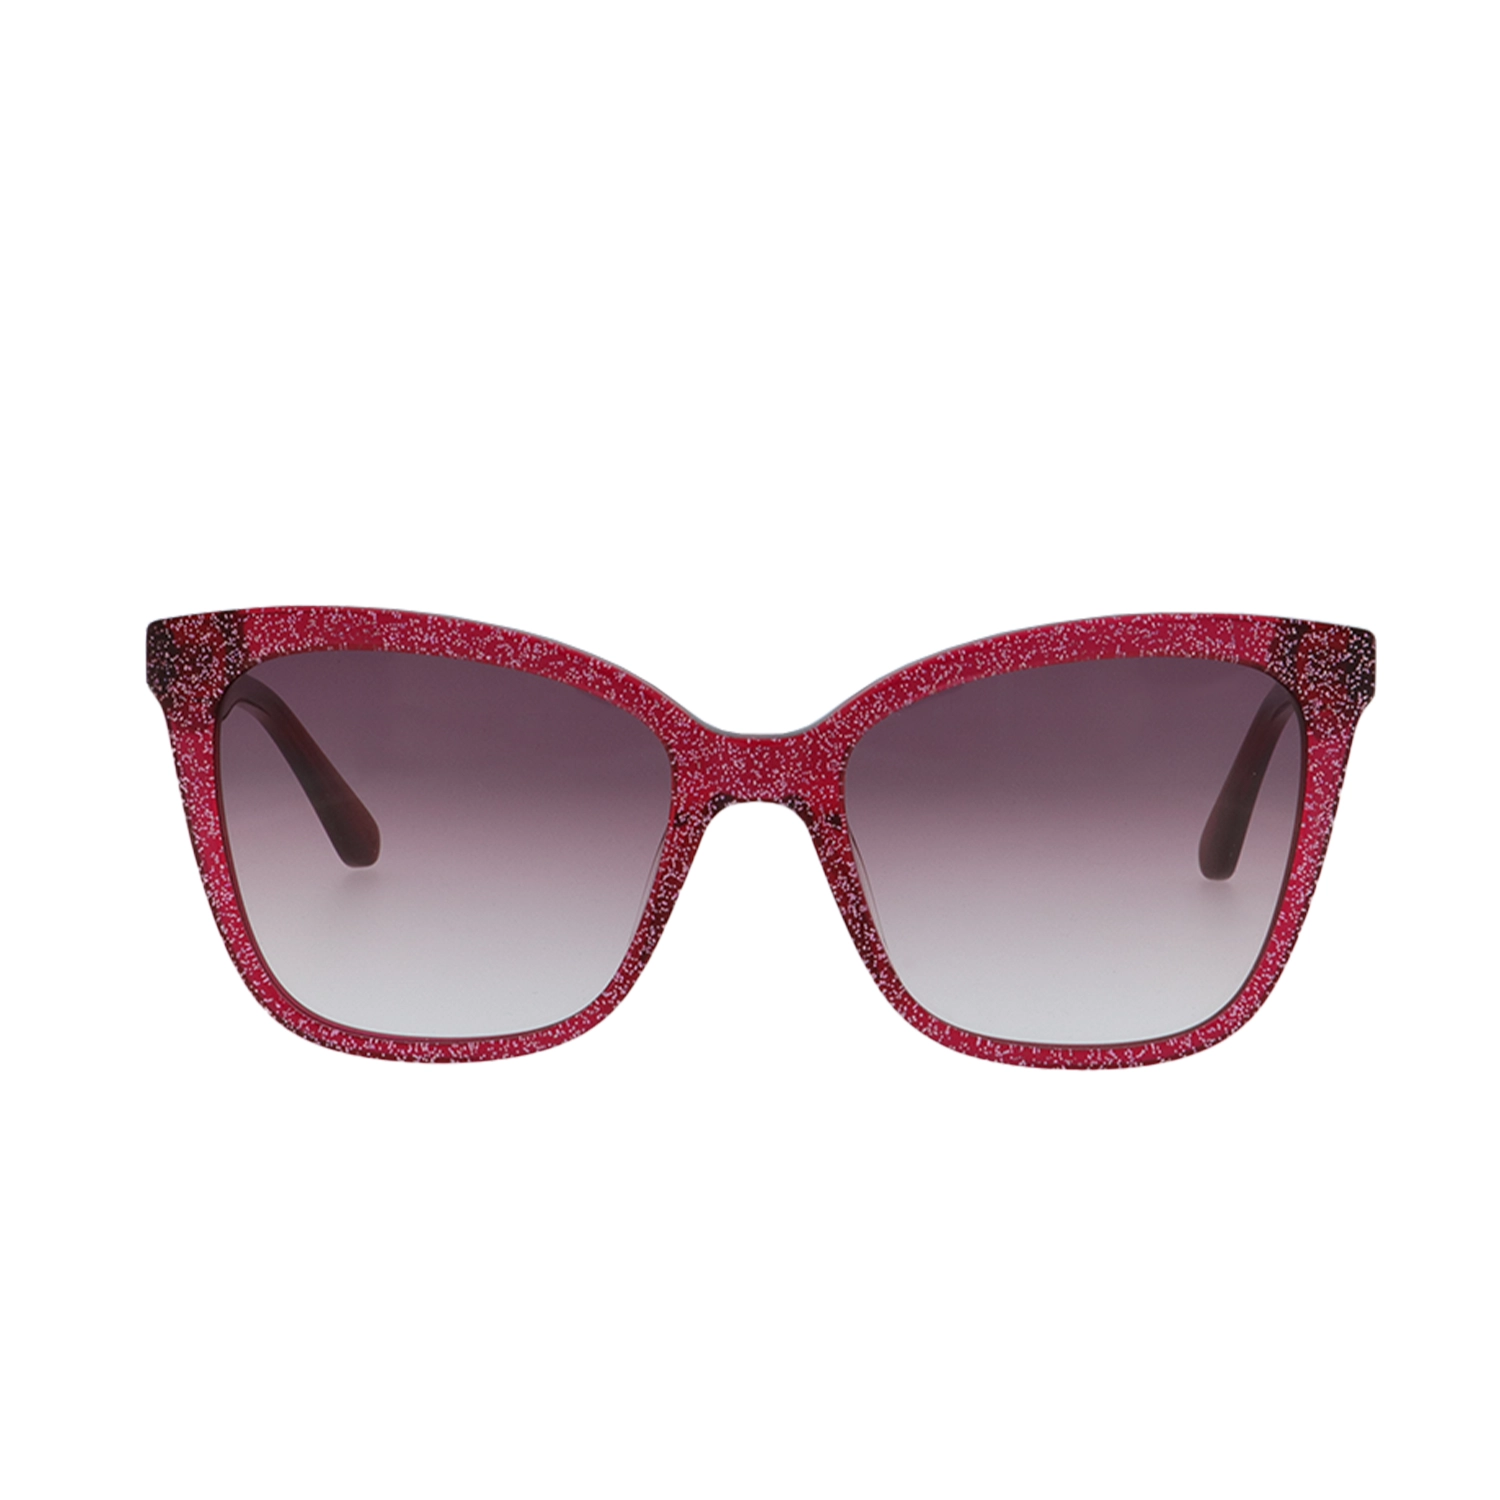 occhiali da sole karl lagerfeld 988s colore 133 cateye